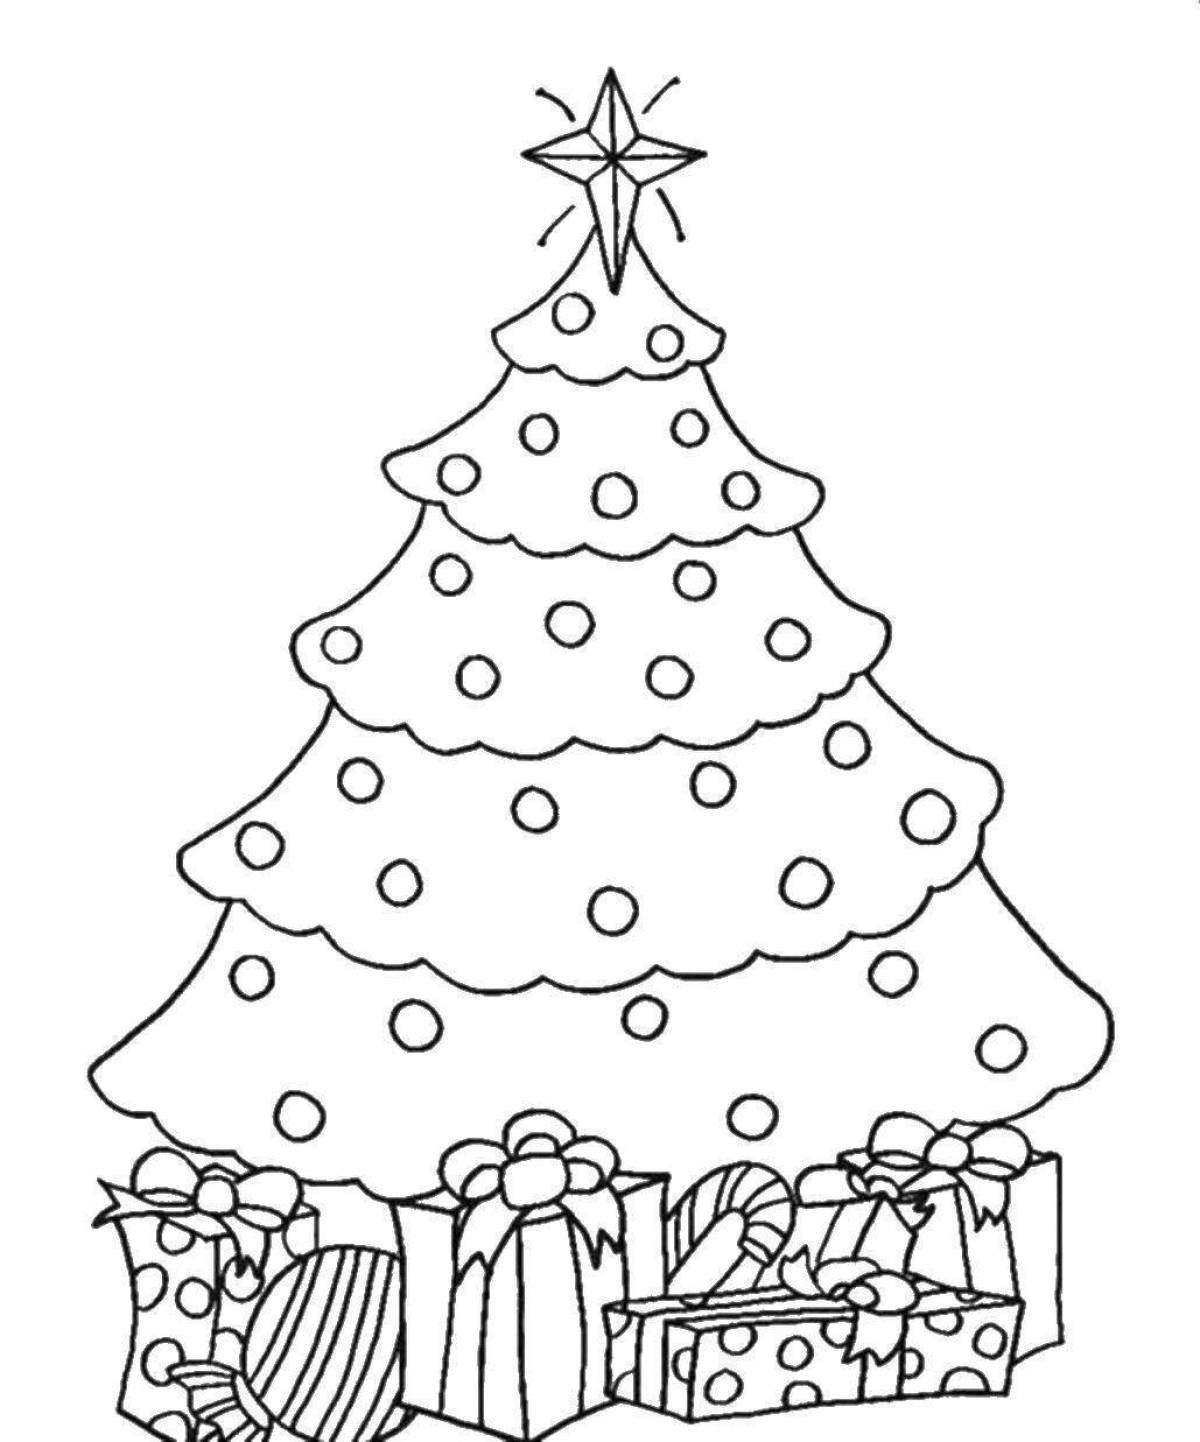 Sky coloring christmas tree image